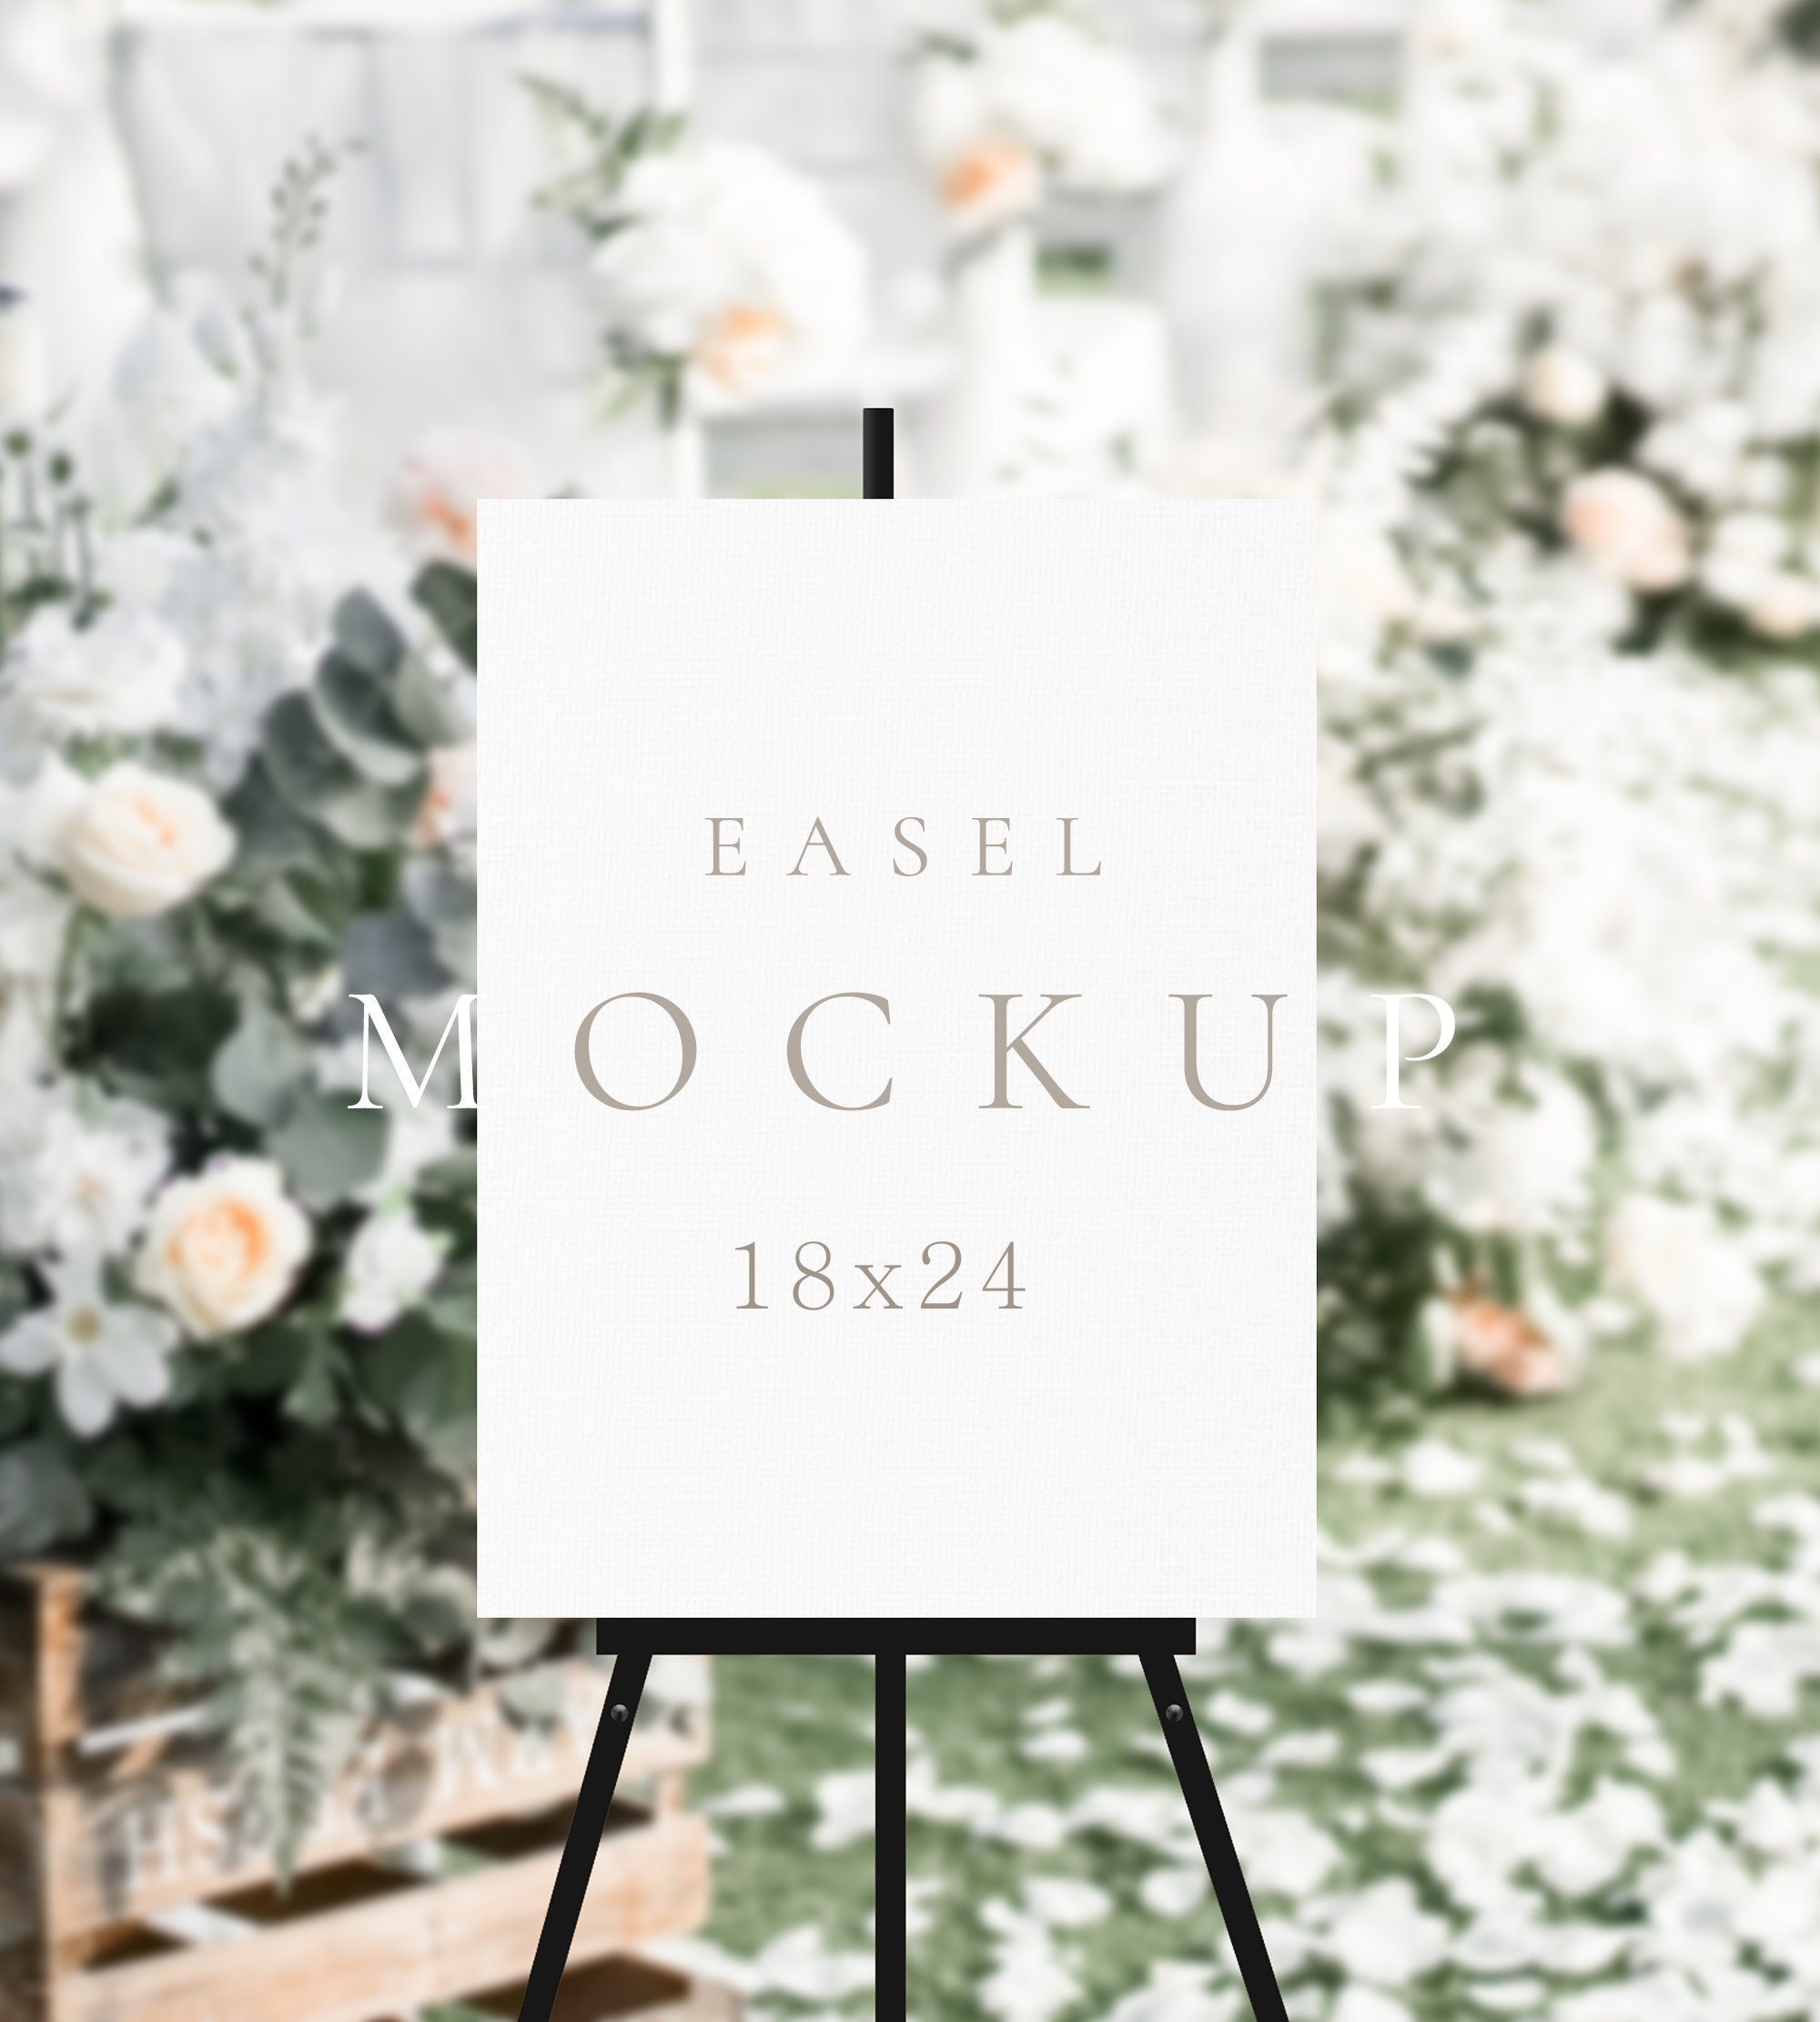 Easel Mockup, Empty Easel Mockup, Wedding Sign Mockup, Stock